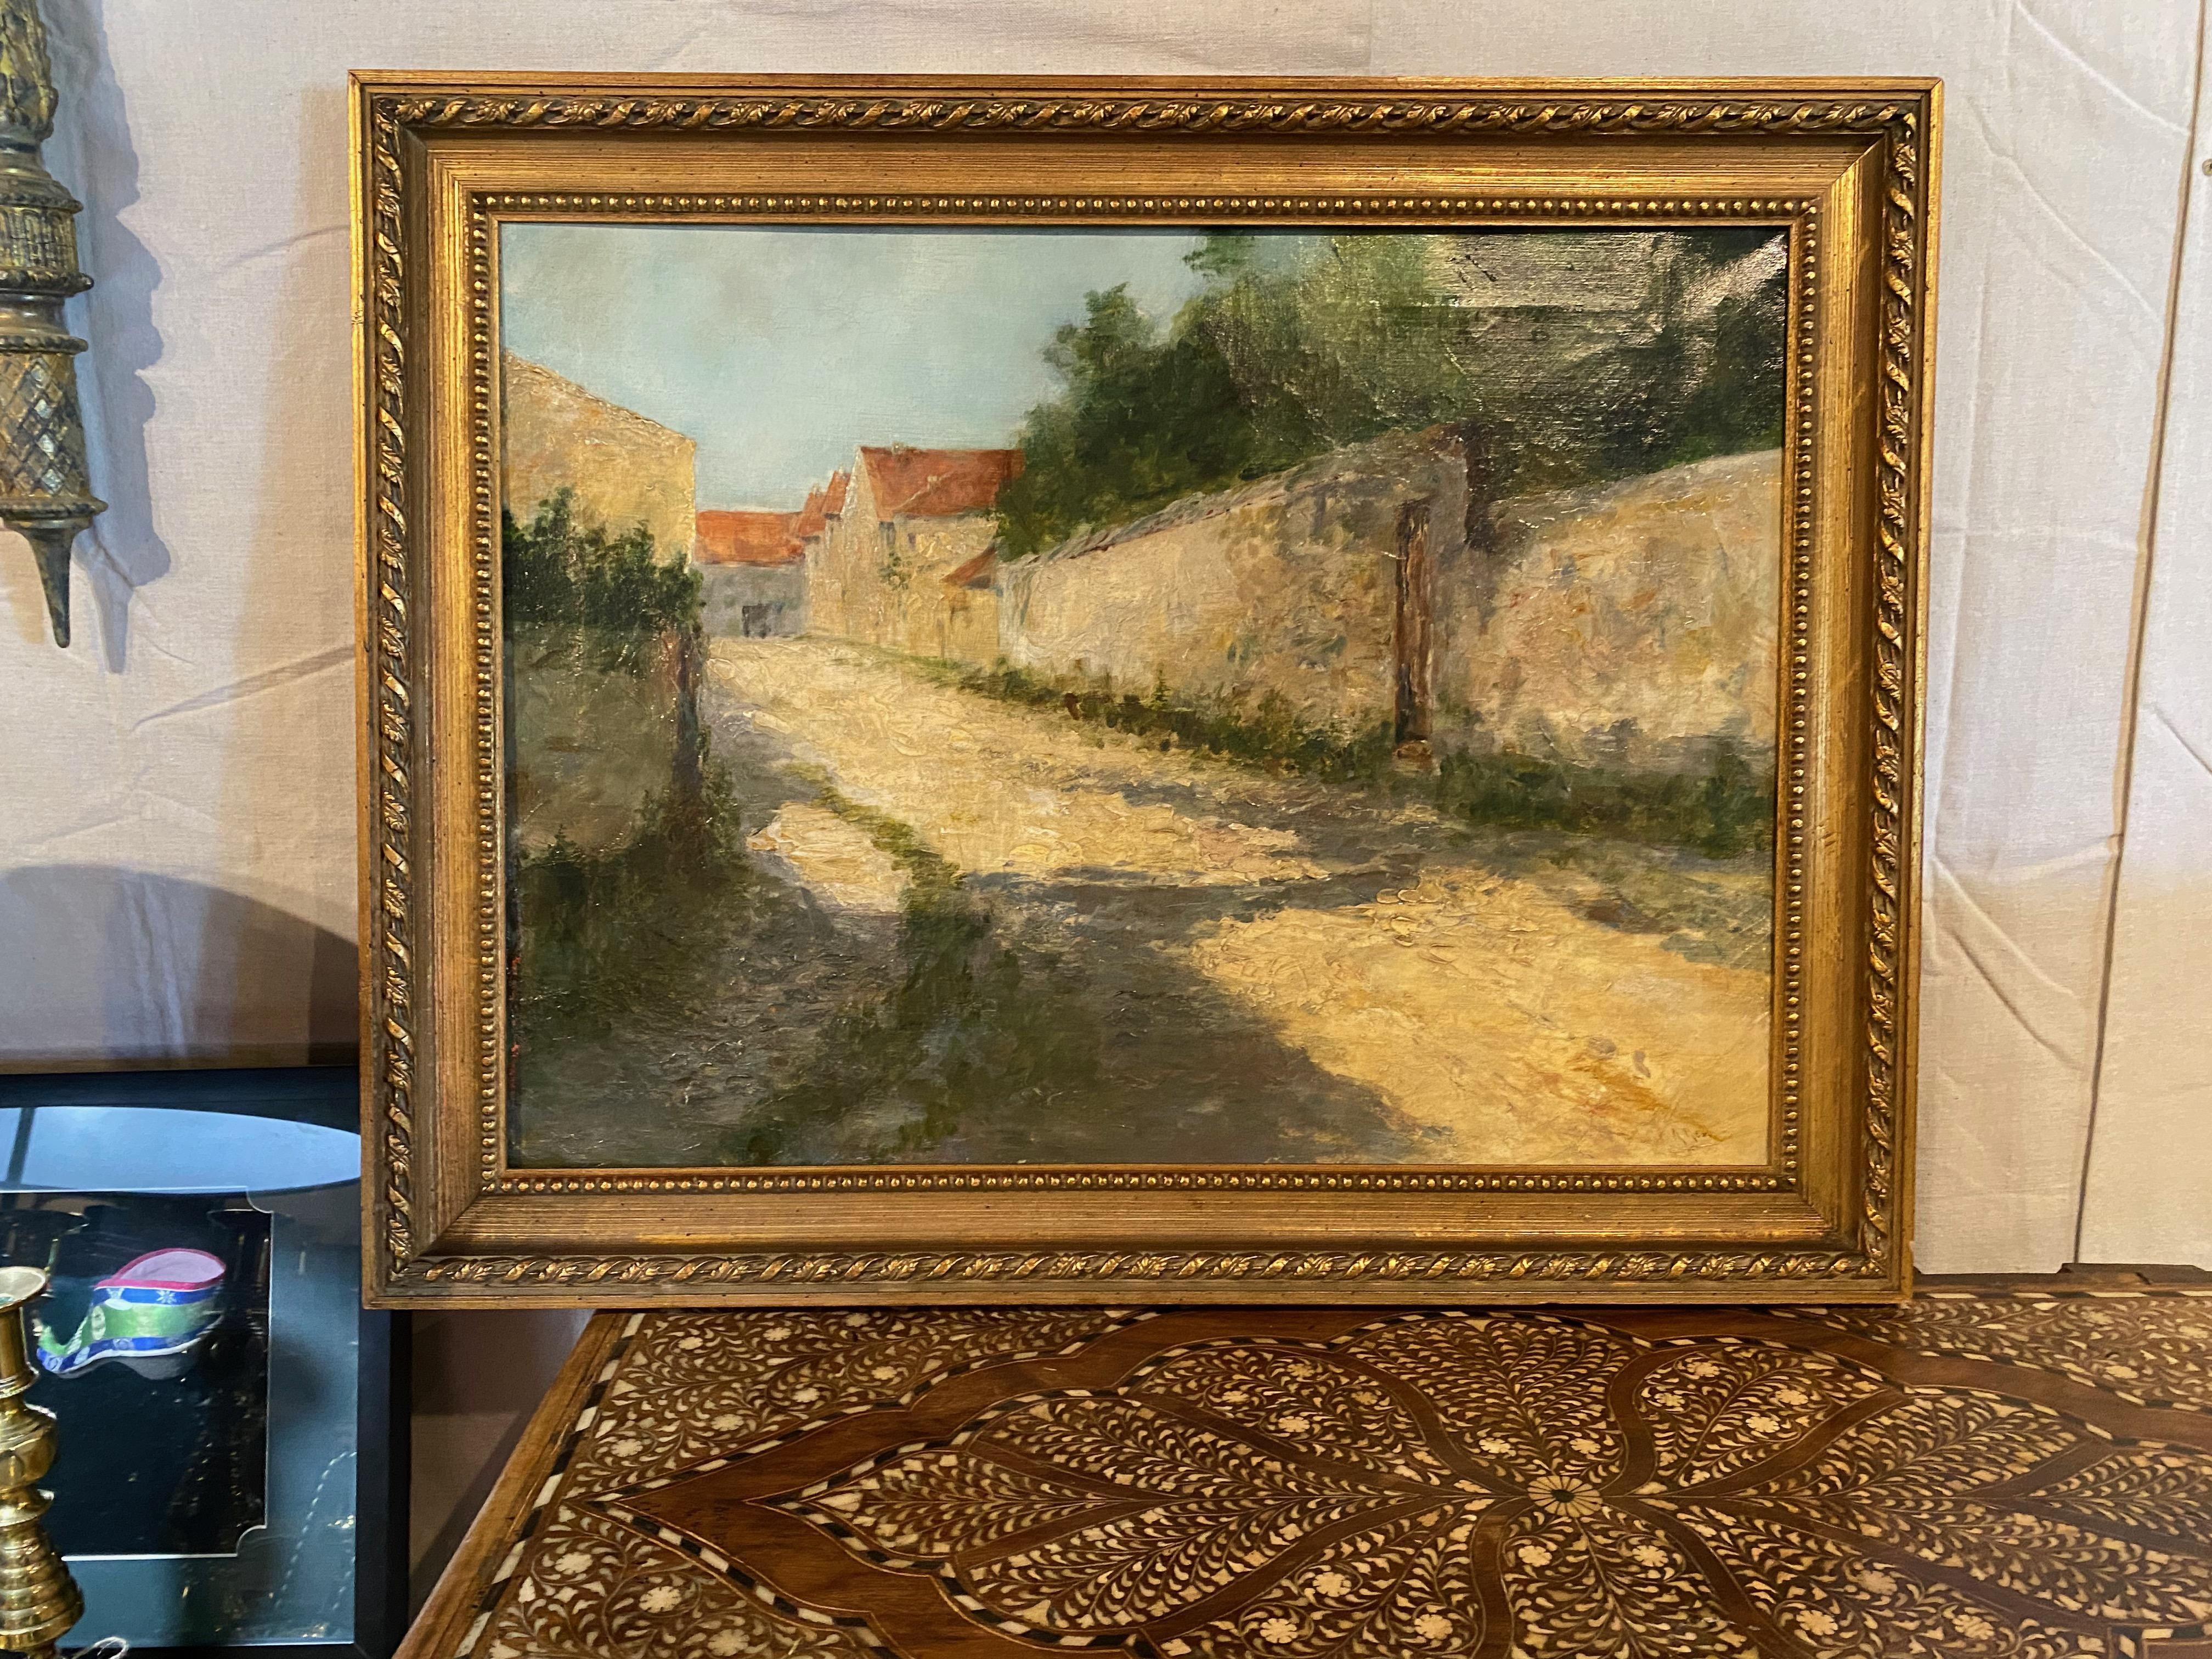 Dies ist ein charmantes postimpressionistisches Gemälde einer italienischen Dorfstraße aus dem späten 19. Das Gemälde wurde von einem kompetenten Künstler gut ausgeführt und ist rechts unten signiert. Das Zusammenspiel von Licht und Schatten lässt